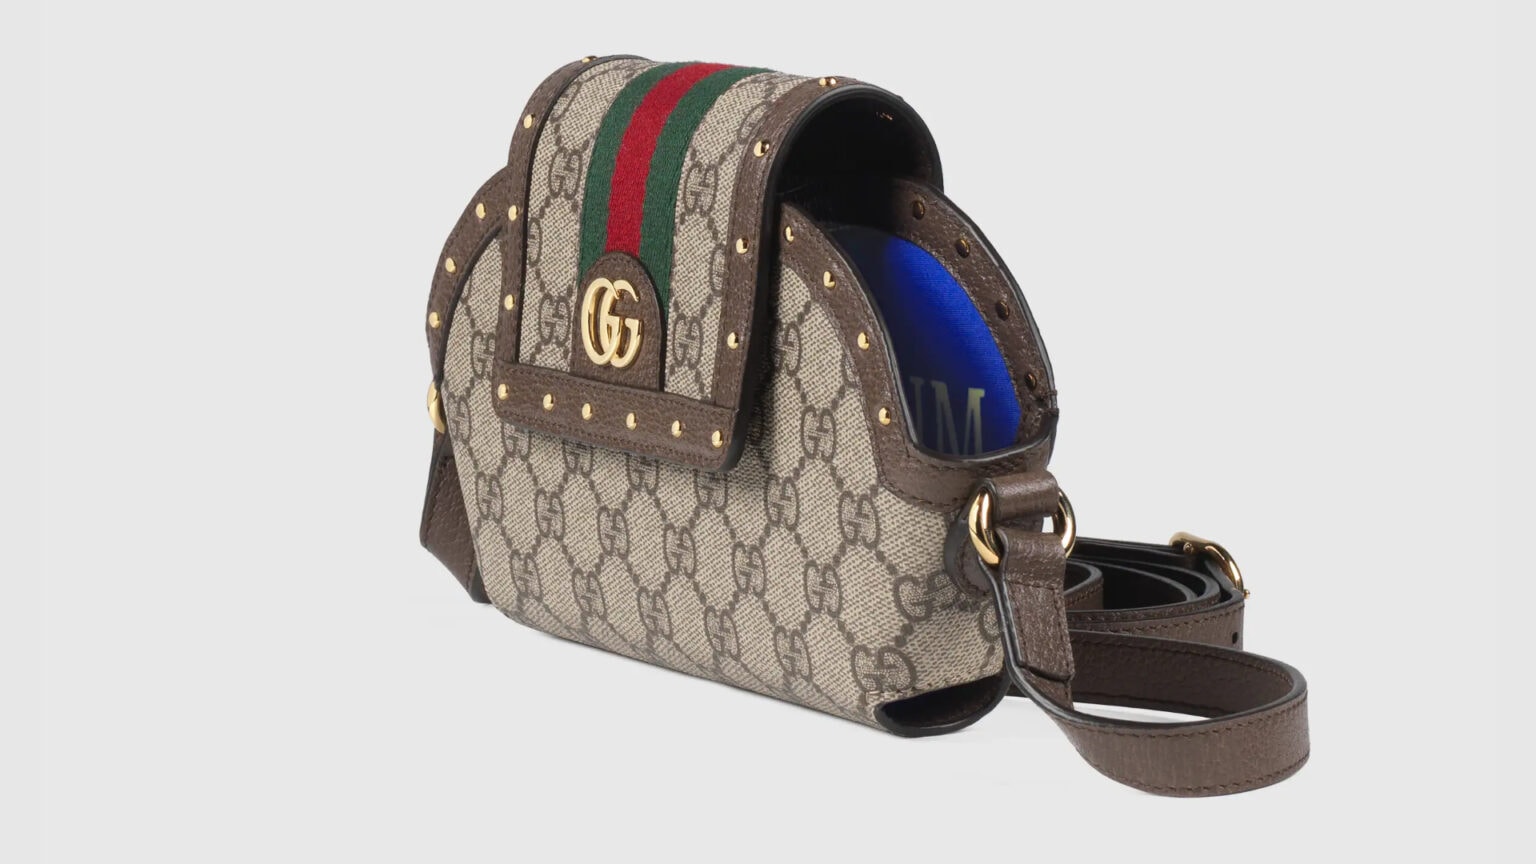 Gucci's AirPods Max case